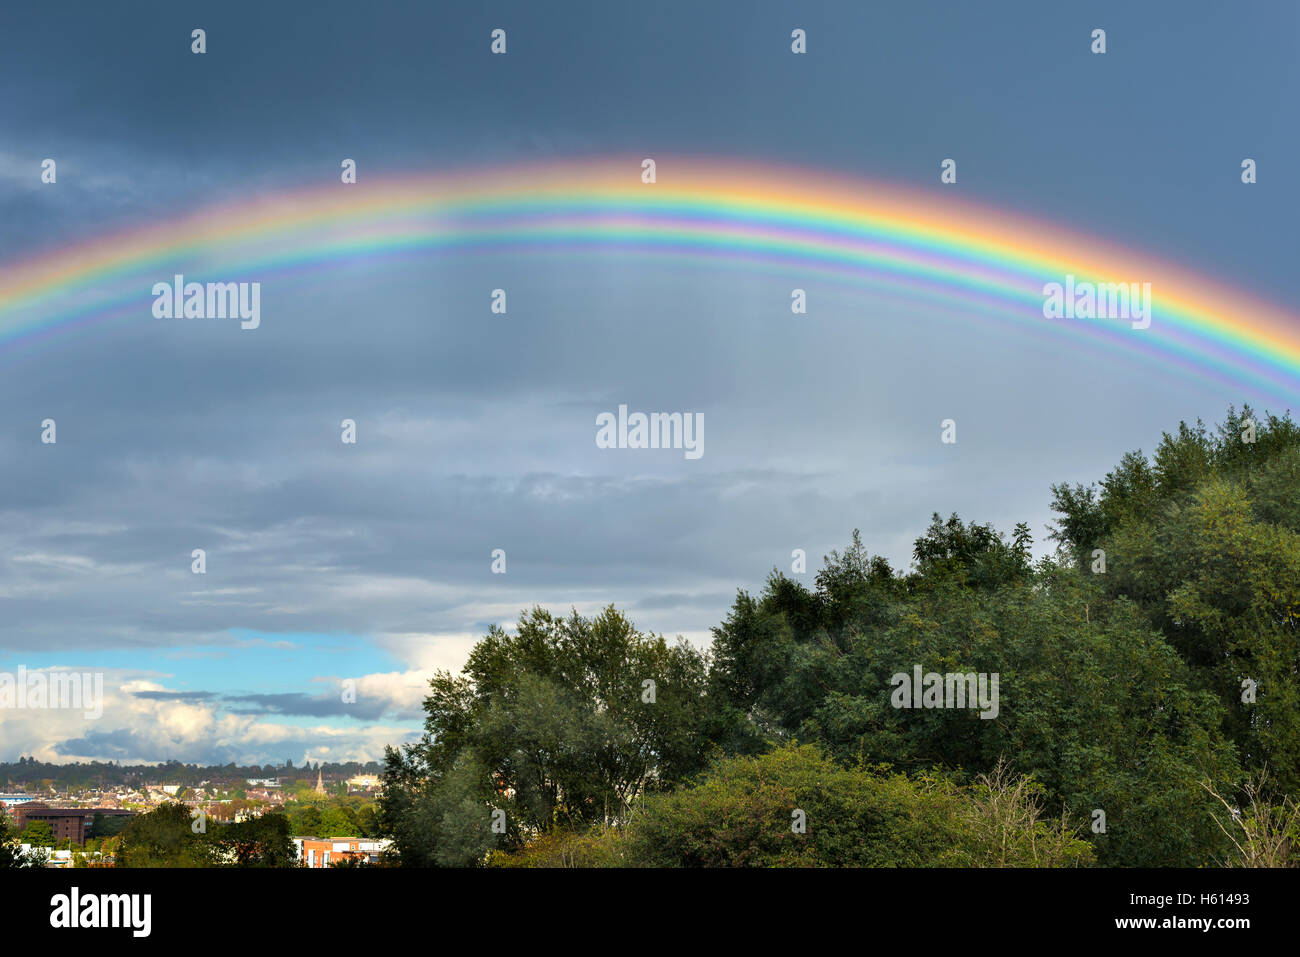 Raro y extraño múltiples arco iris sobre una ciudad inglesa Foto de stock